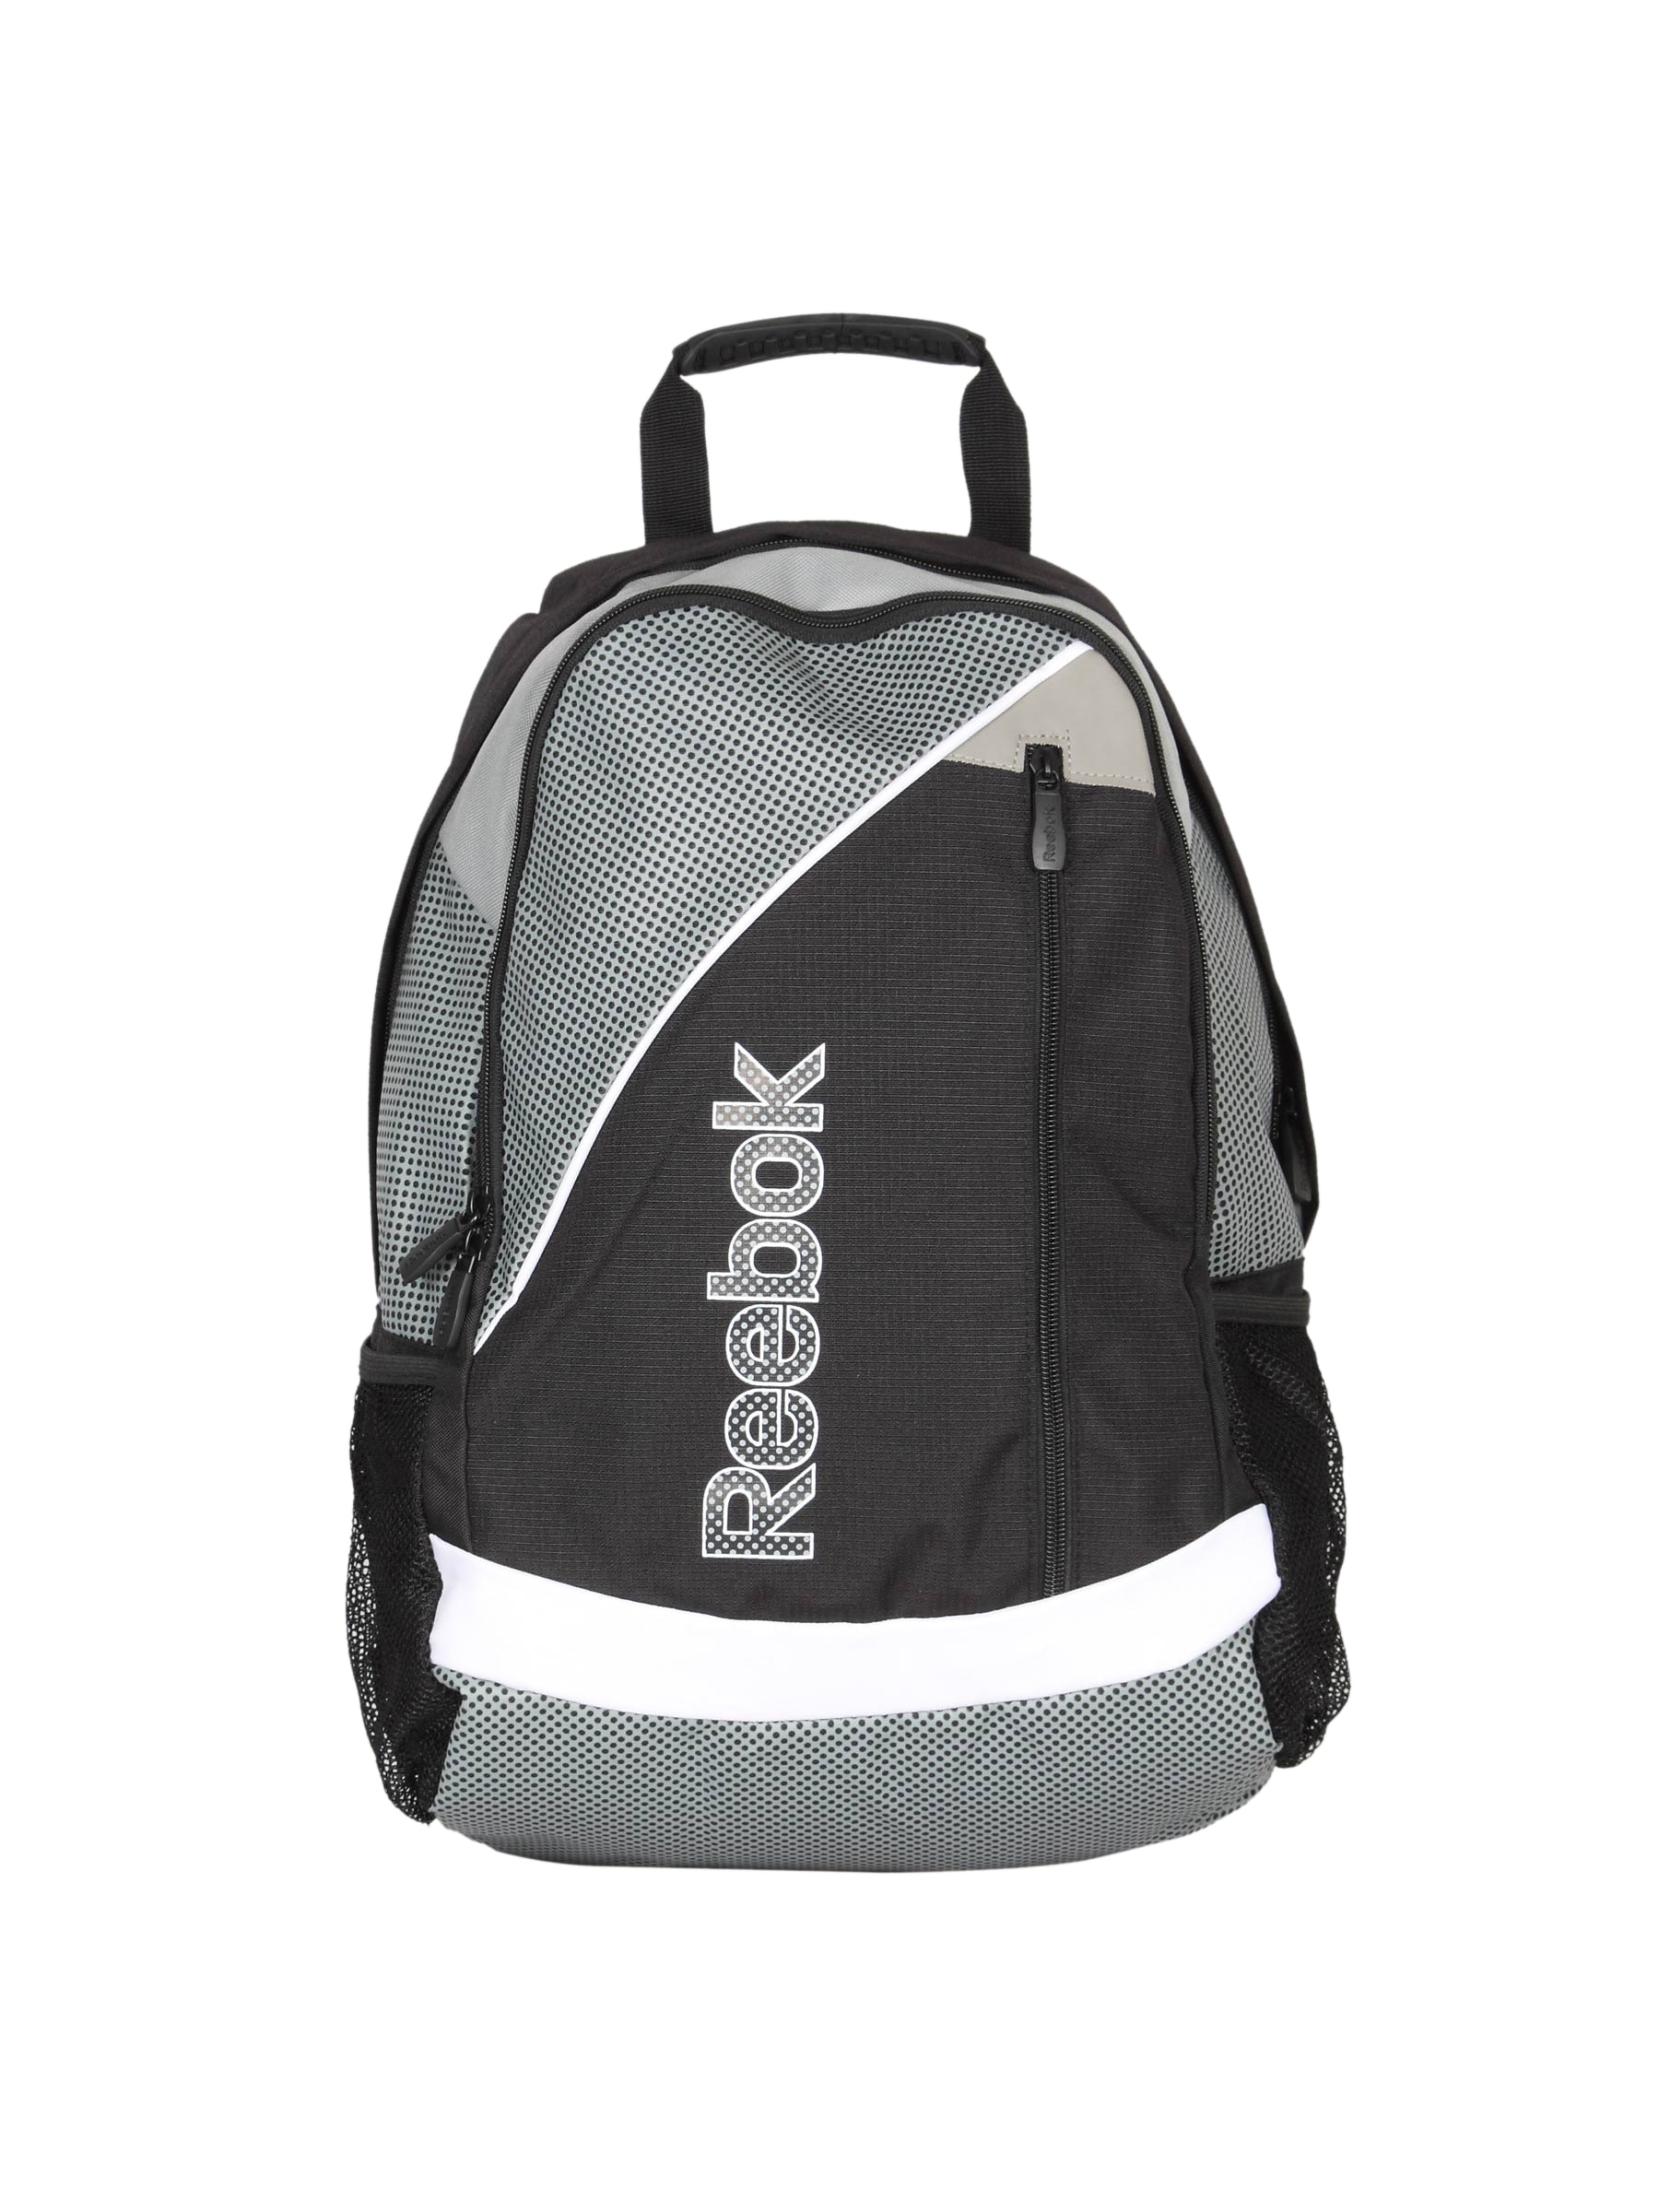 Reebok Unisex Black Grey Backpack